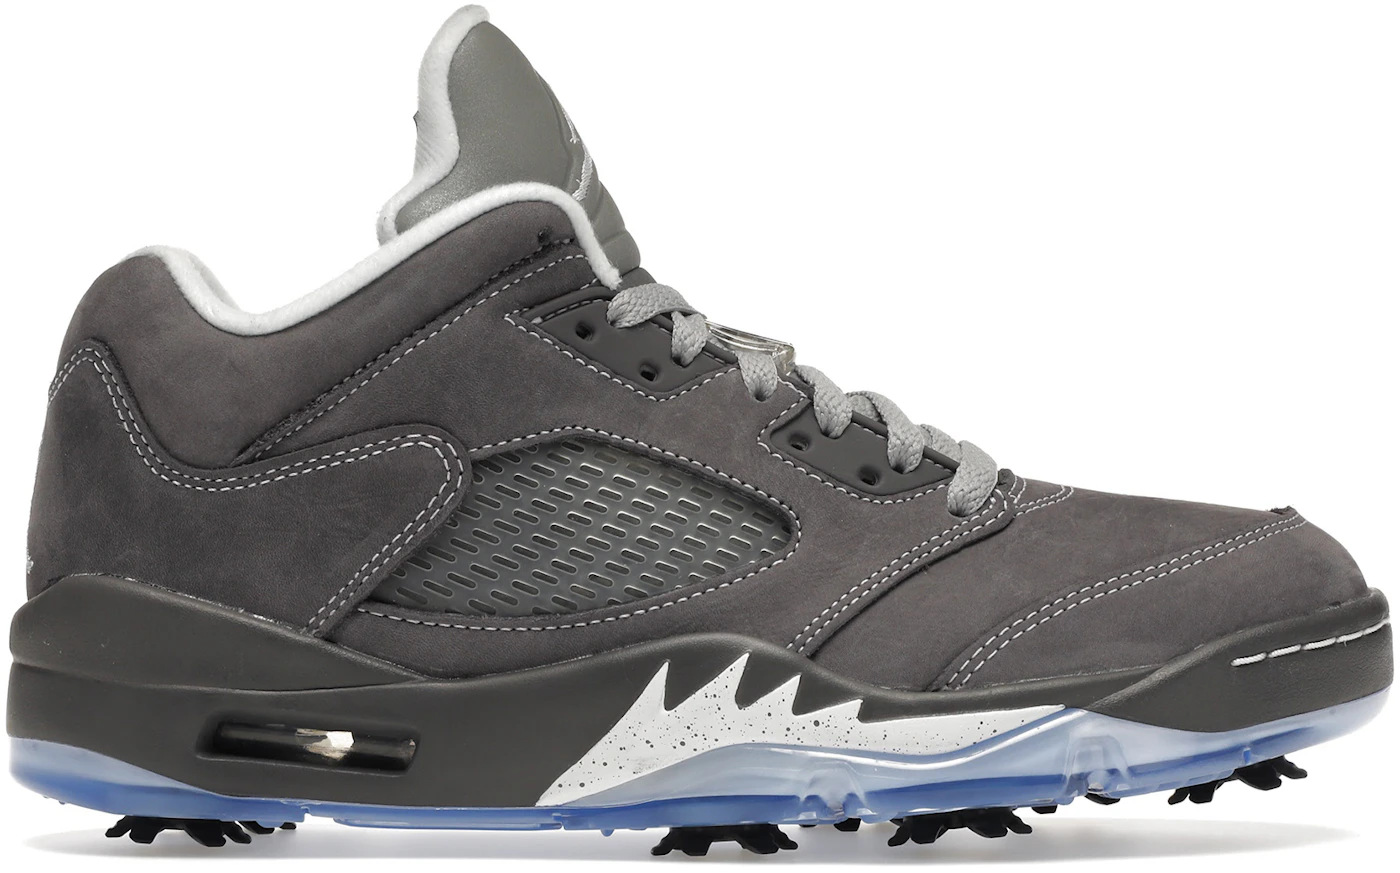 Air Jordan 5 Golf Black Grape CU4523-001 Release Info